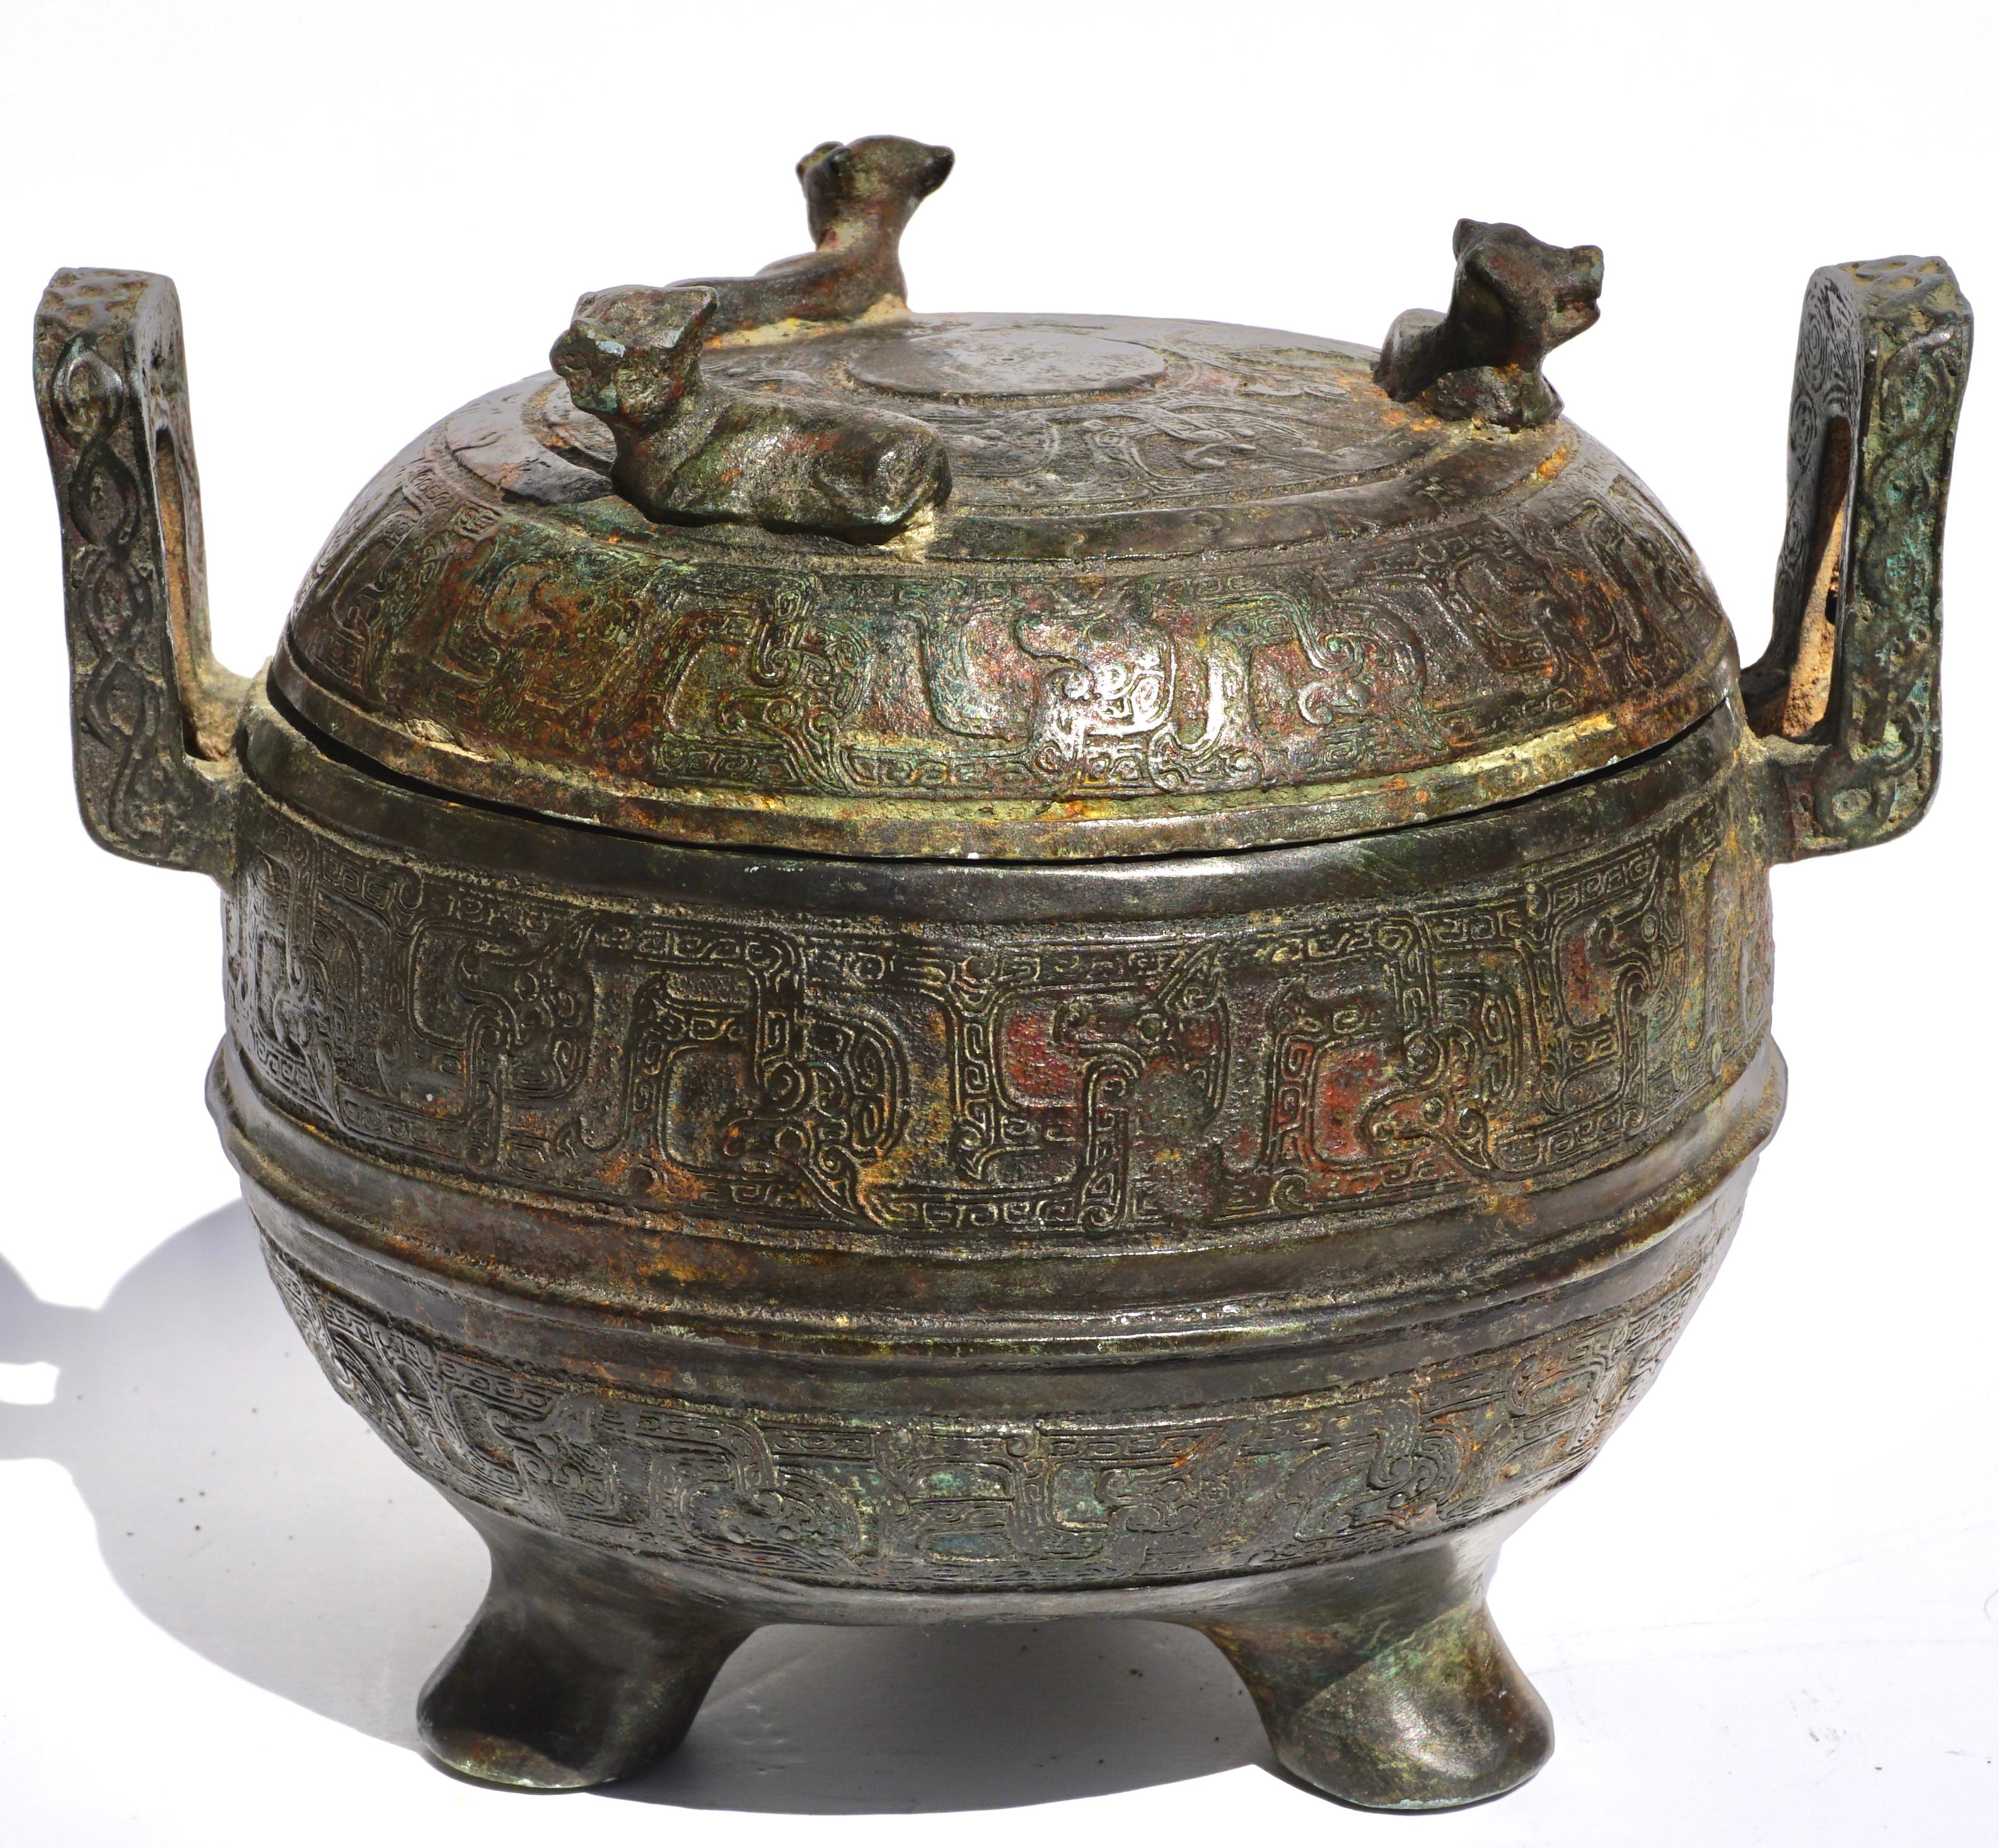 Pot à ding en bronze archaïque chinois de la période des États Guerriers. Circa 500 BCE

Récipient rituel en bronze de taille moyenne, de belle forme, avec trois pieds élégants et un couvercle avec trois figures bovines. Le pot à deux anses est